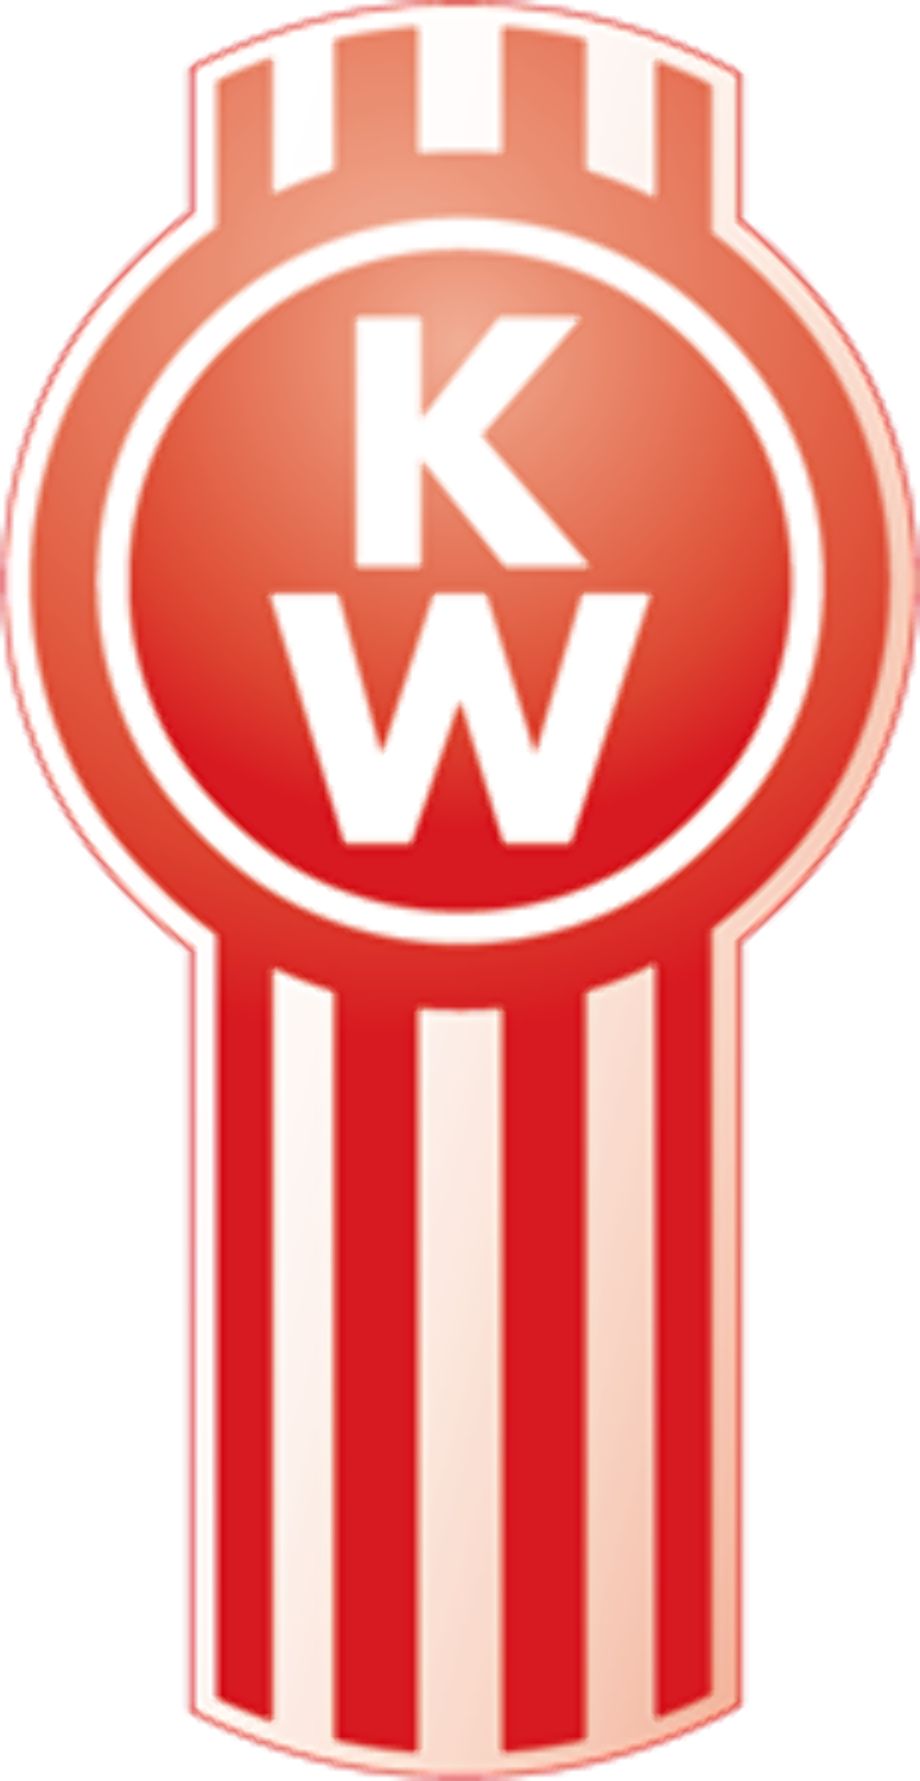 Download High Quality kenworth logo svg Transparent PNG Images - Art